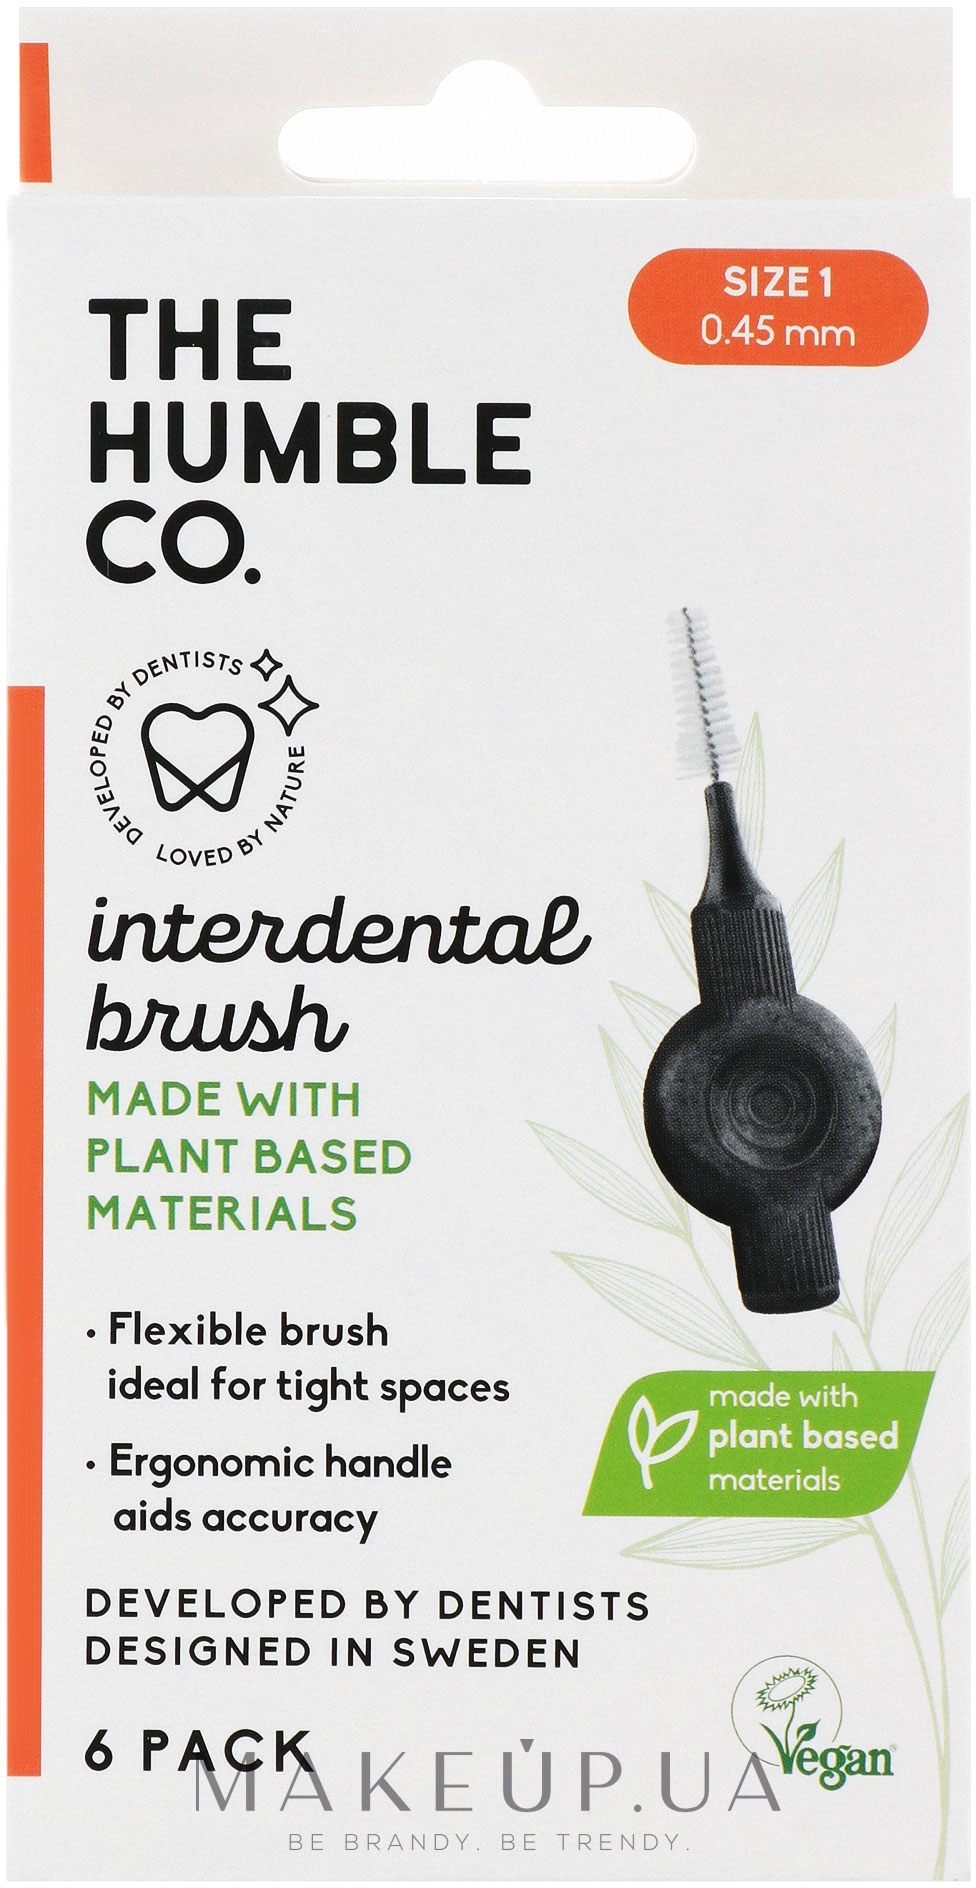 Міжзубні інтердентальні йоржики, 0.45 мм, помаранчеві, 6 шт. - The Humble Co Interdental Brush — фото 6шт